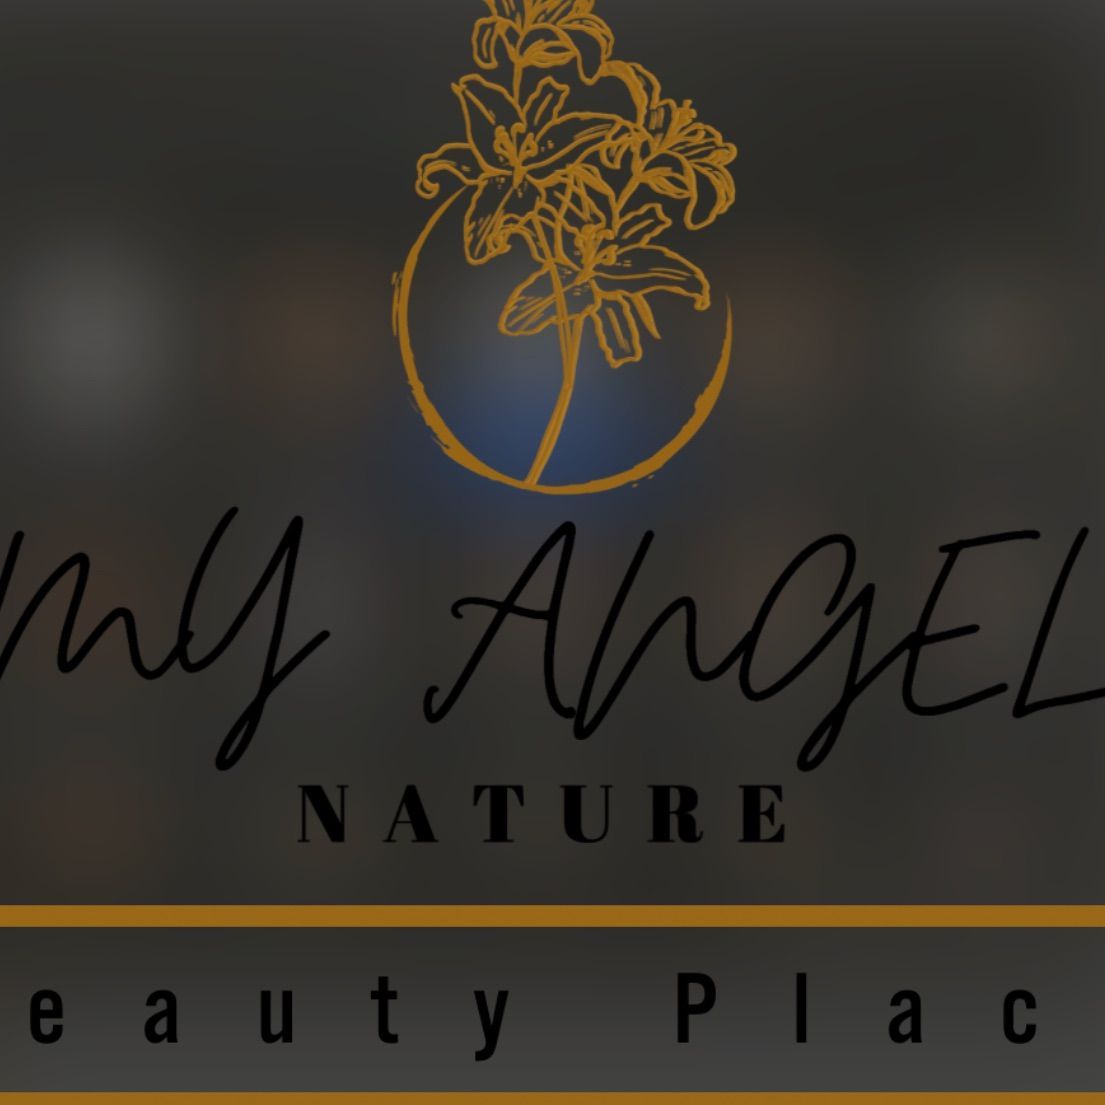 My Angel Beauty Place, 2400 Rhawn St, Philadelphia, 19152